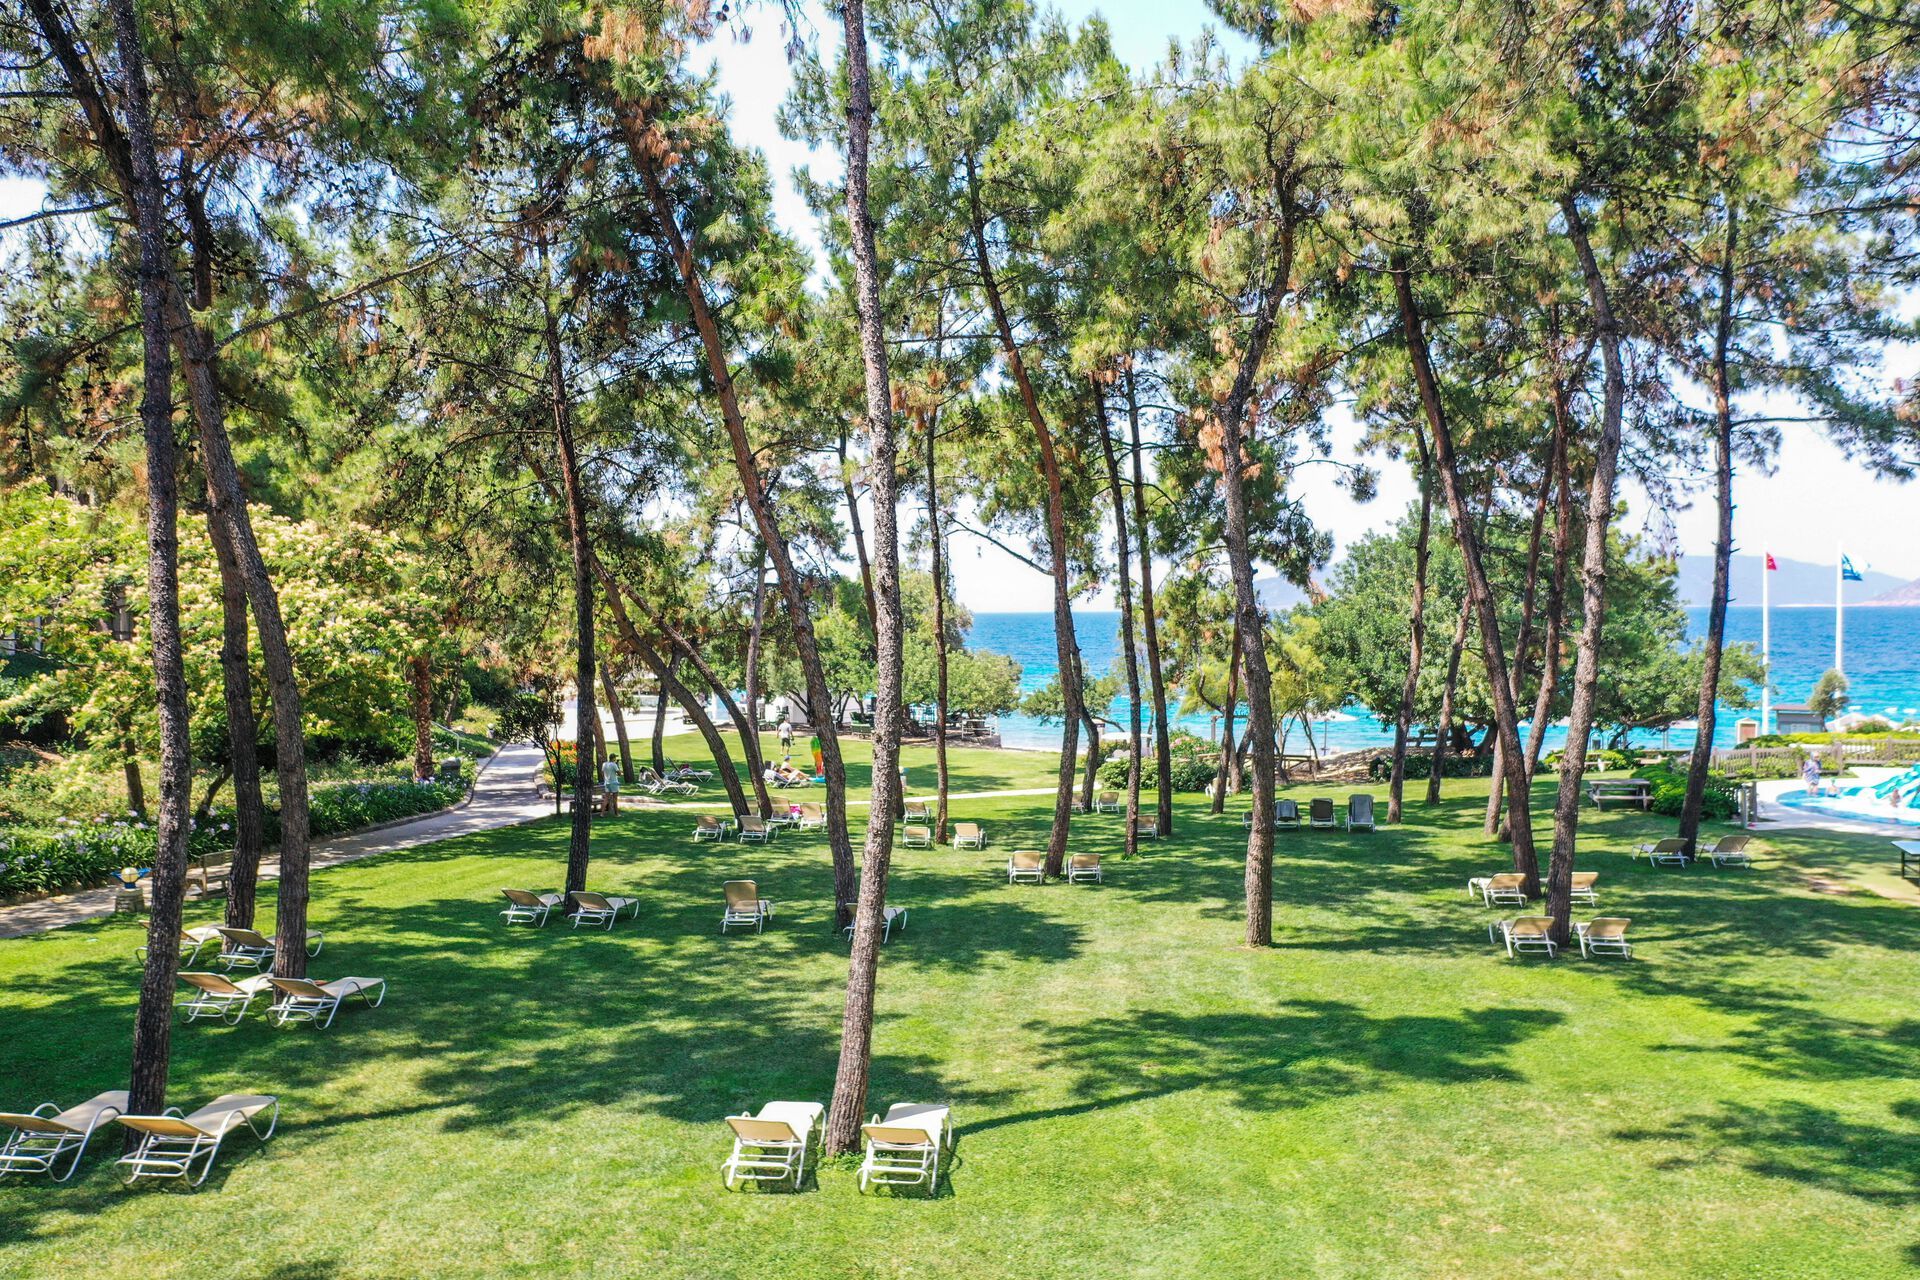 Turquie - Bodrum - Hôtel Hapimag Sea Garden Resort 5*